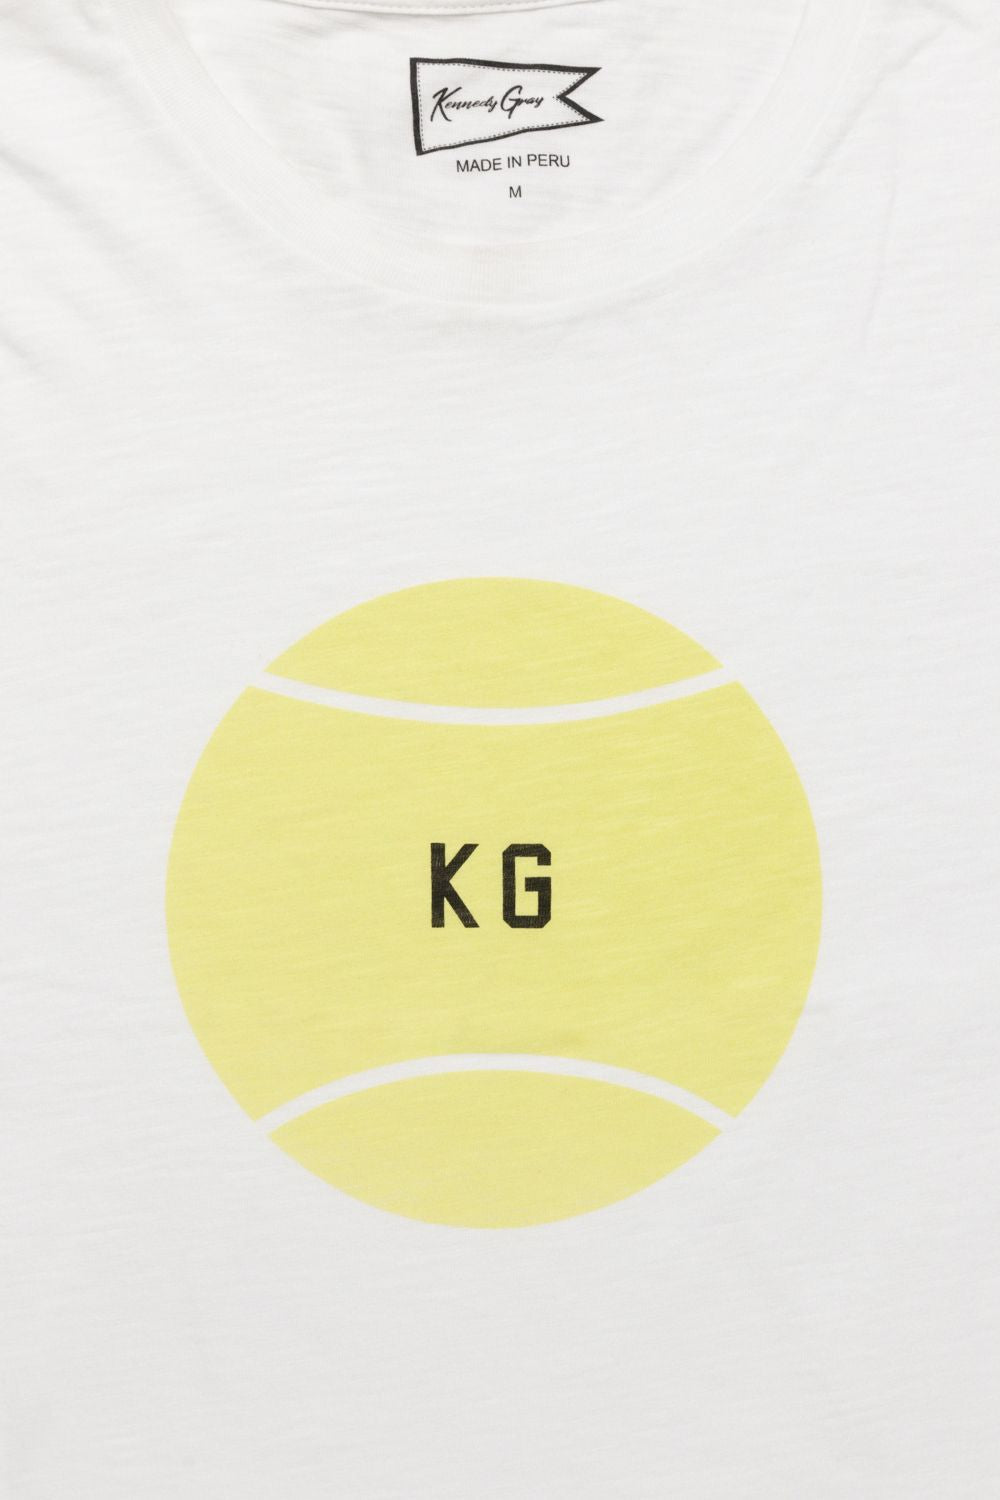 KG Tennis Ball Tee